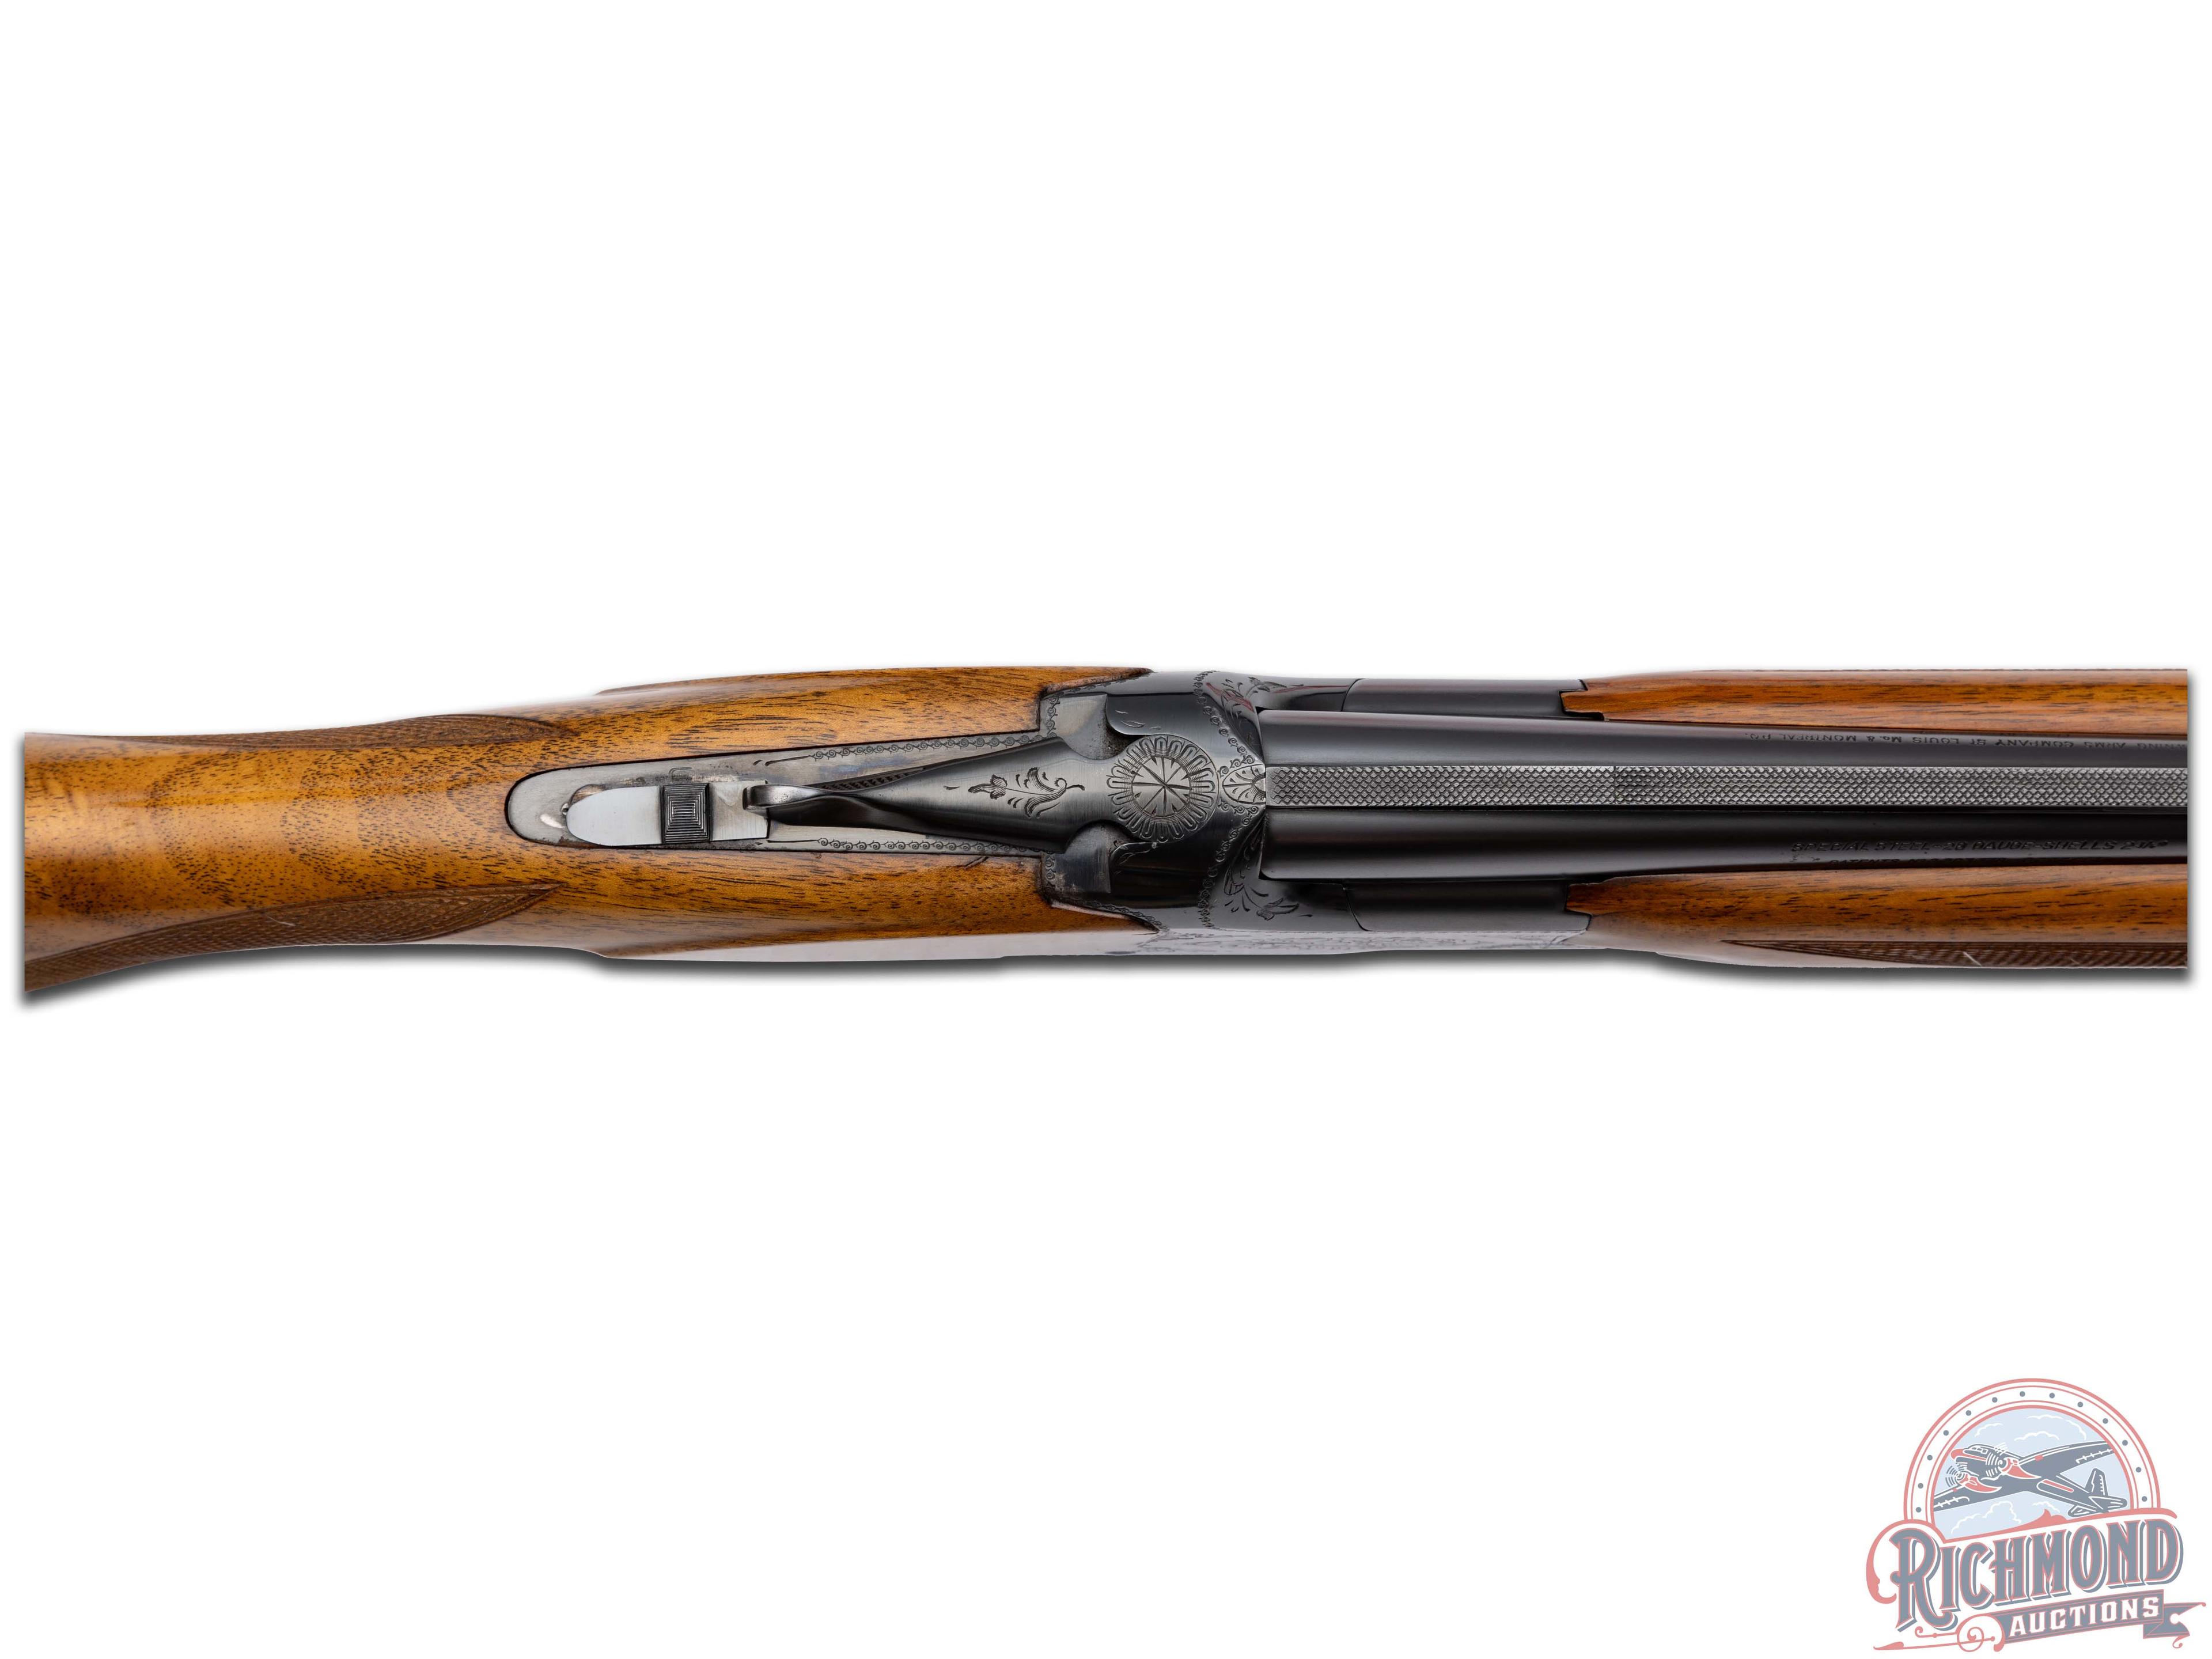 1968 Belgian Browning Grade I Superposed 28 Gauge Over/Under Shotgun